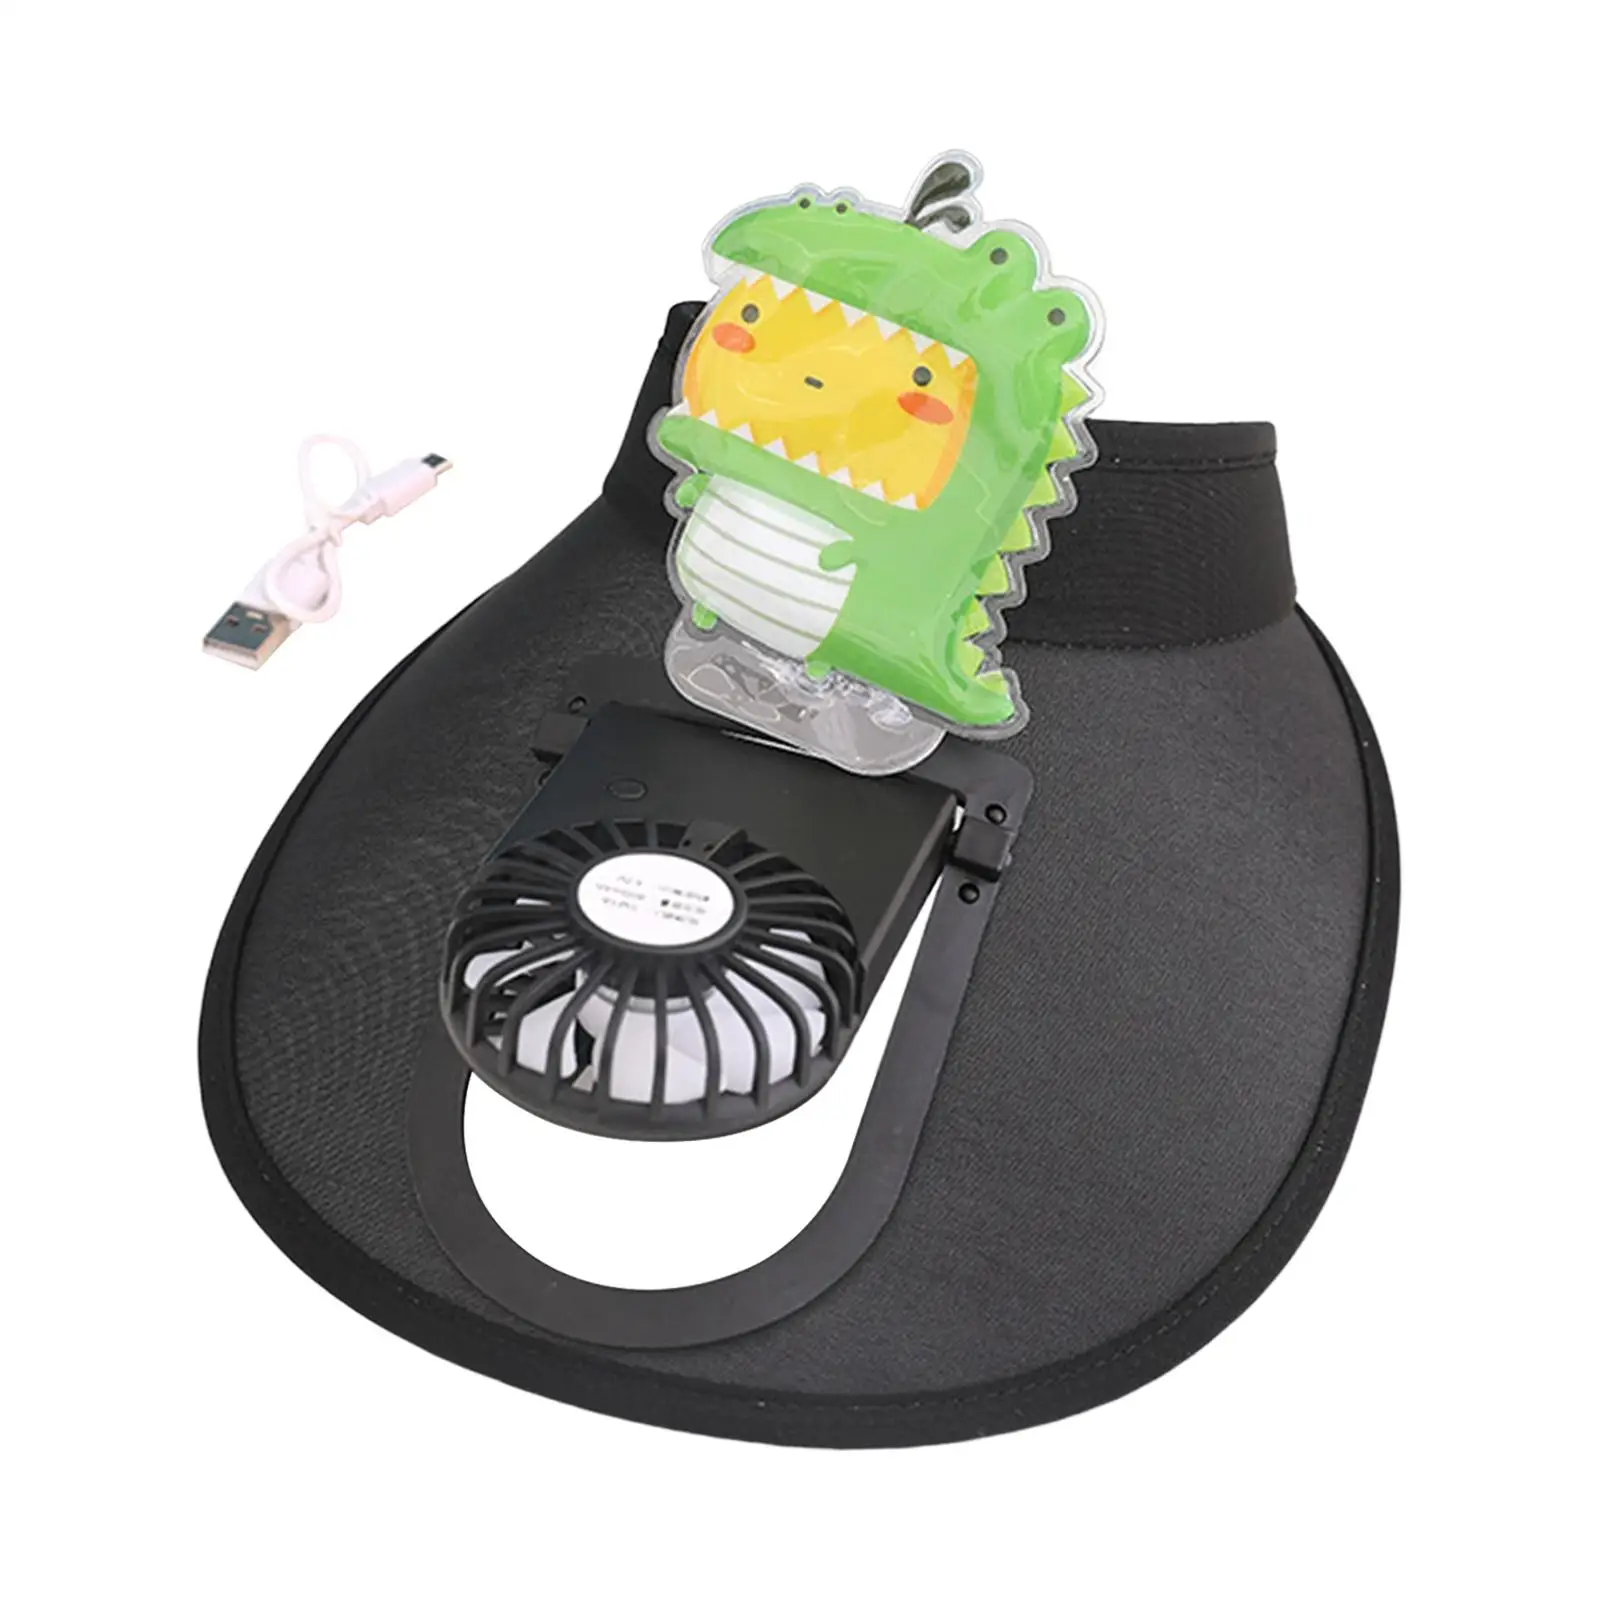 Sun Visor Fan Hat Three Settings Outdoor Sun Hats Breathable Mini Fan Hat for Girls Boys Men Women Kids Adults Holiday Beach